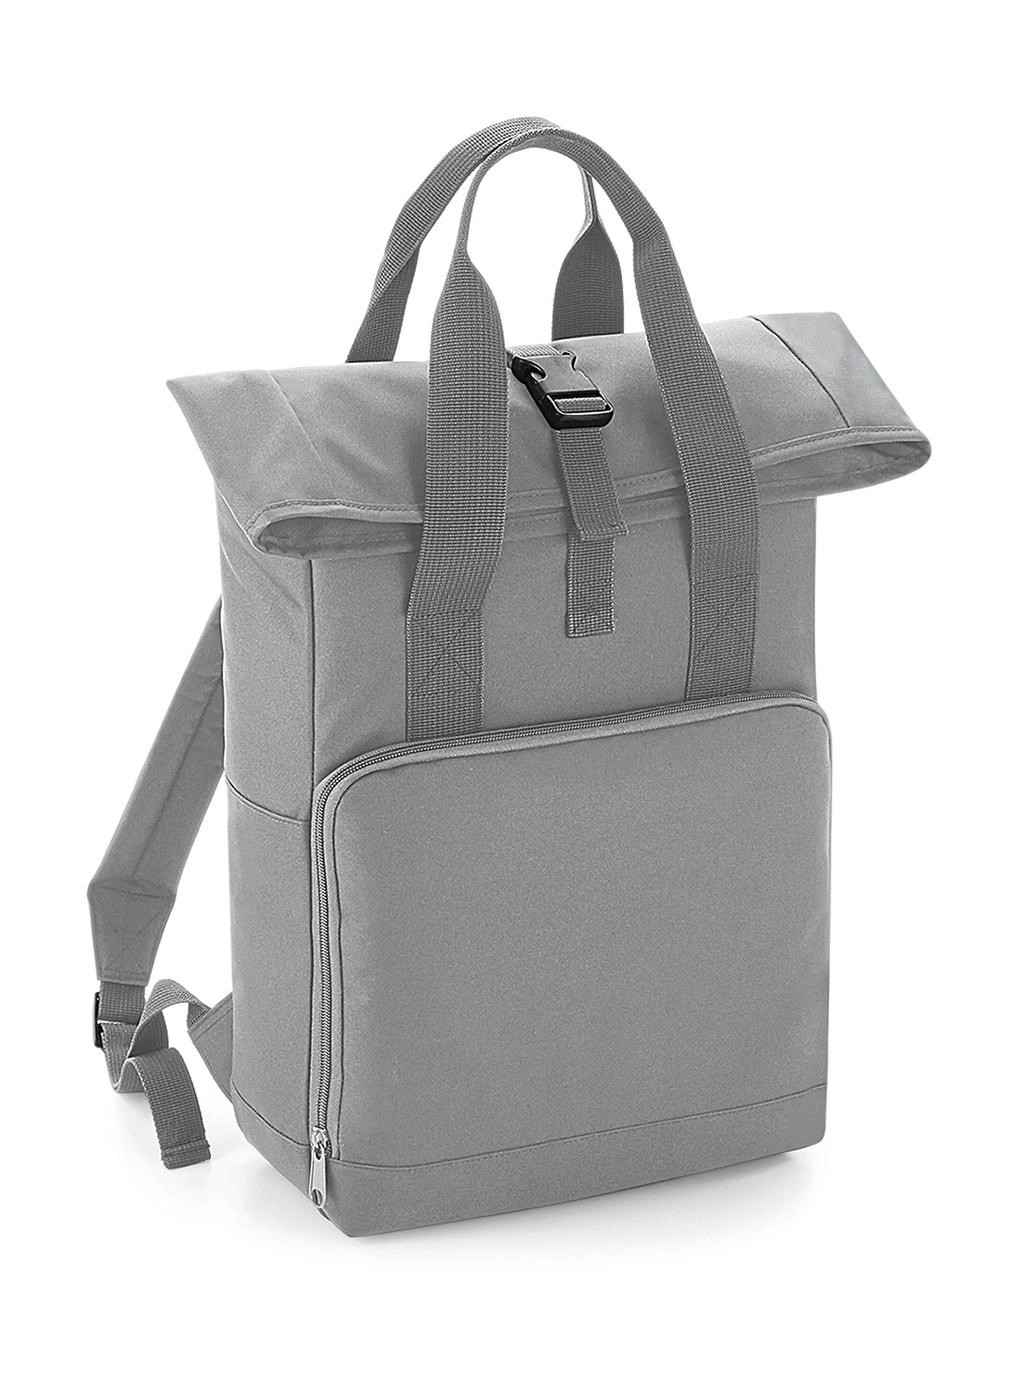 Twin Handle Roll-Top Backpack zum Besticken und Bedrucken in der Farbe Light Grey mit Ihren Logo, Schriftzug oder Motiv.